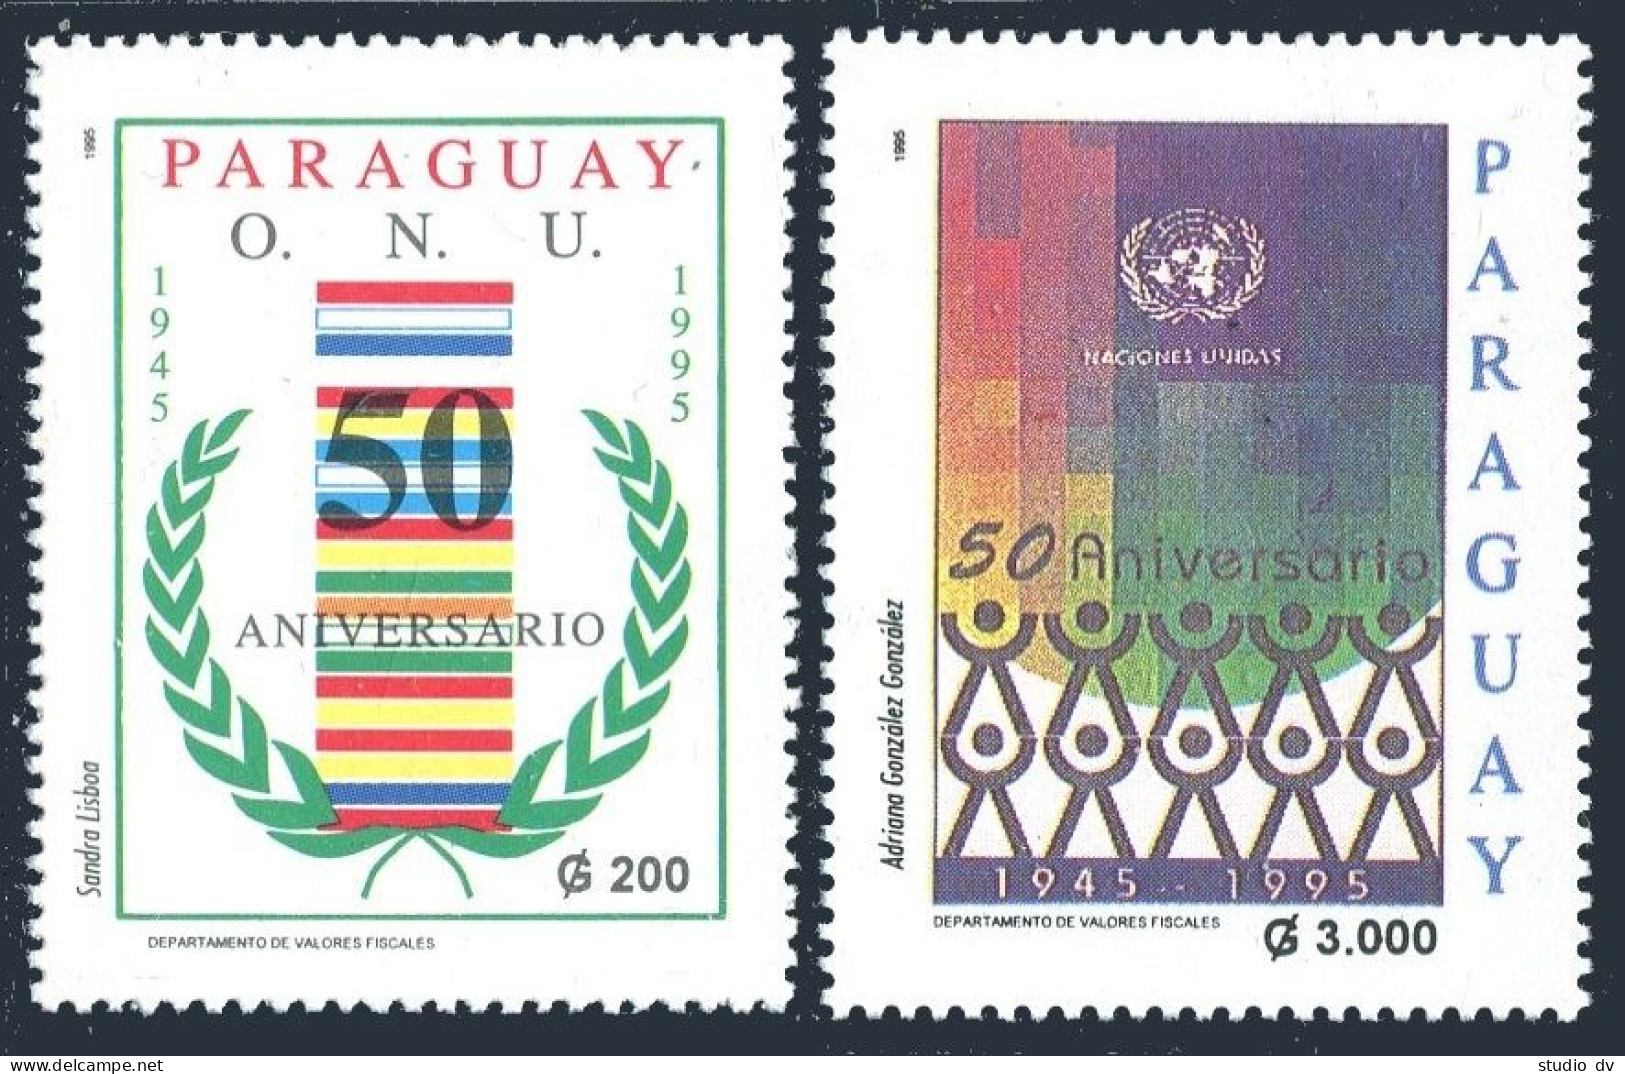 Paraguay 2523-2524, MNH. Michel 4704-4705. UN, 50th Ann. 1995. Flags. - Paraguay